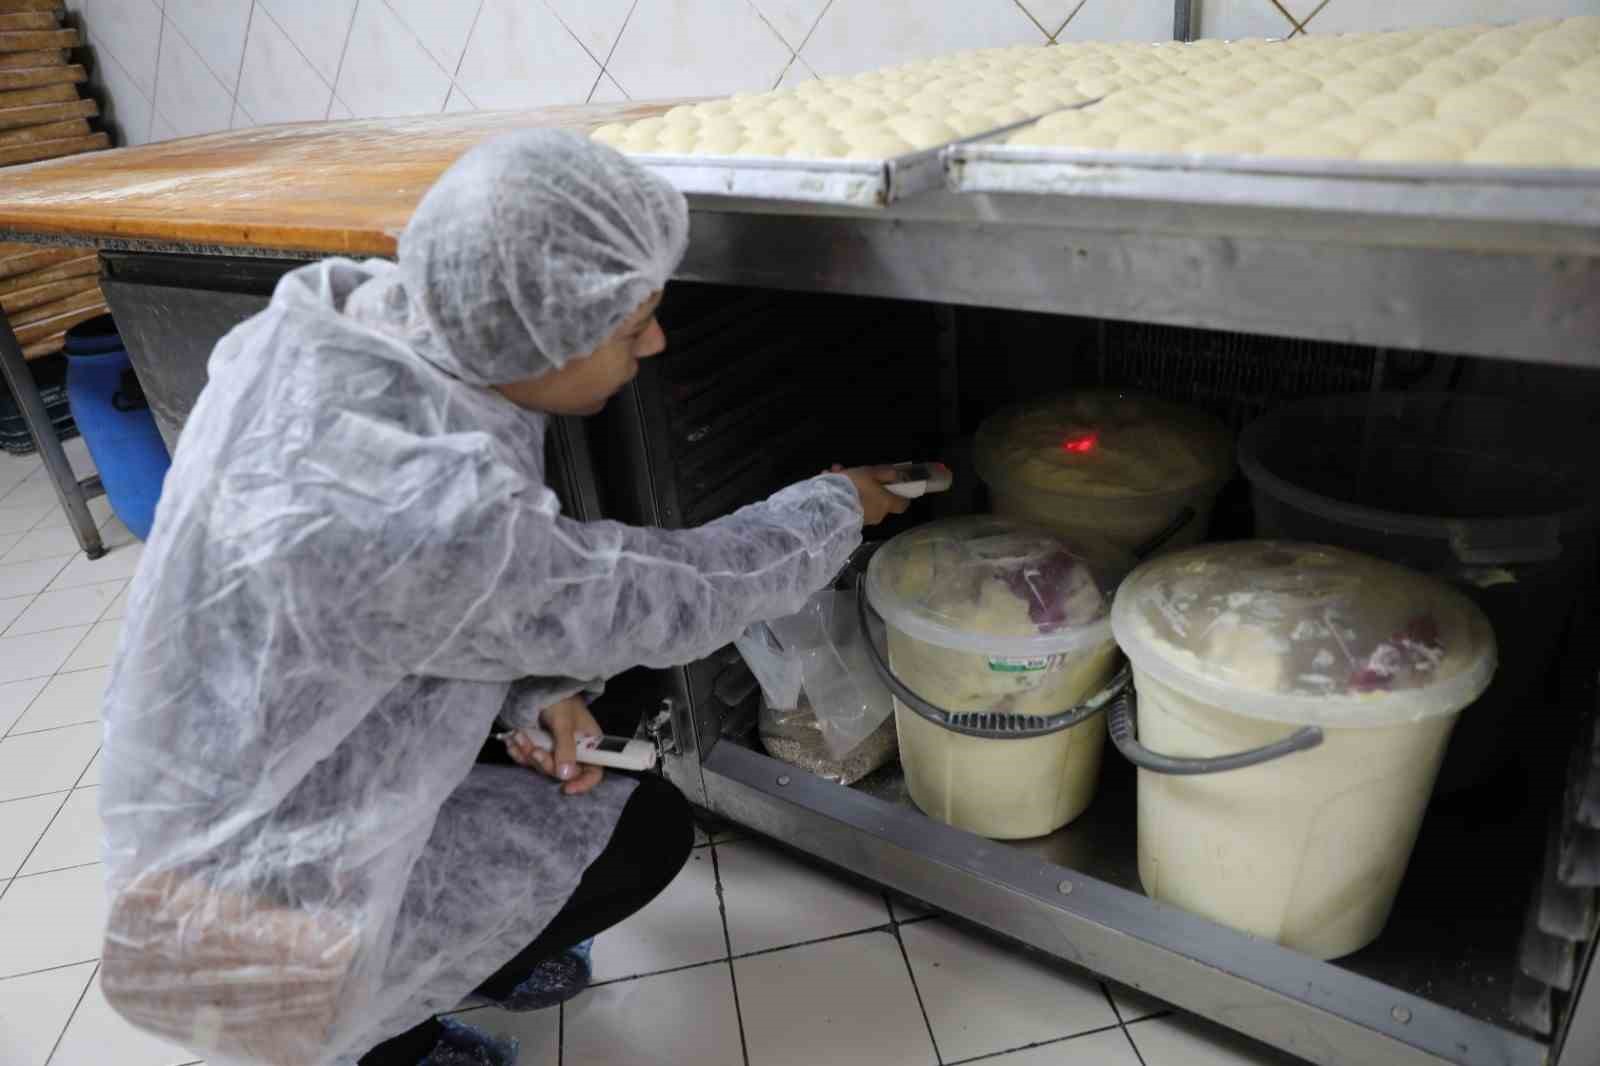 Pastacılık ürünleri üreten işletmelere denetimler sıkılaştırıldı